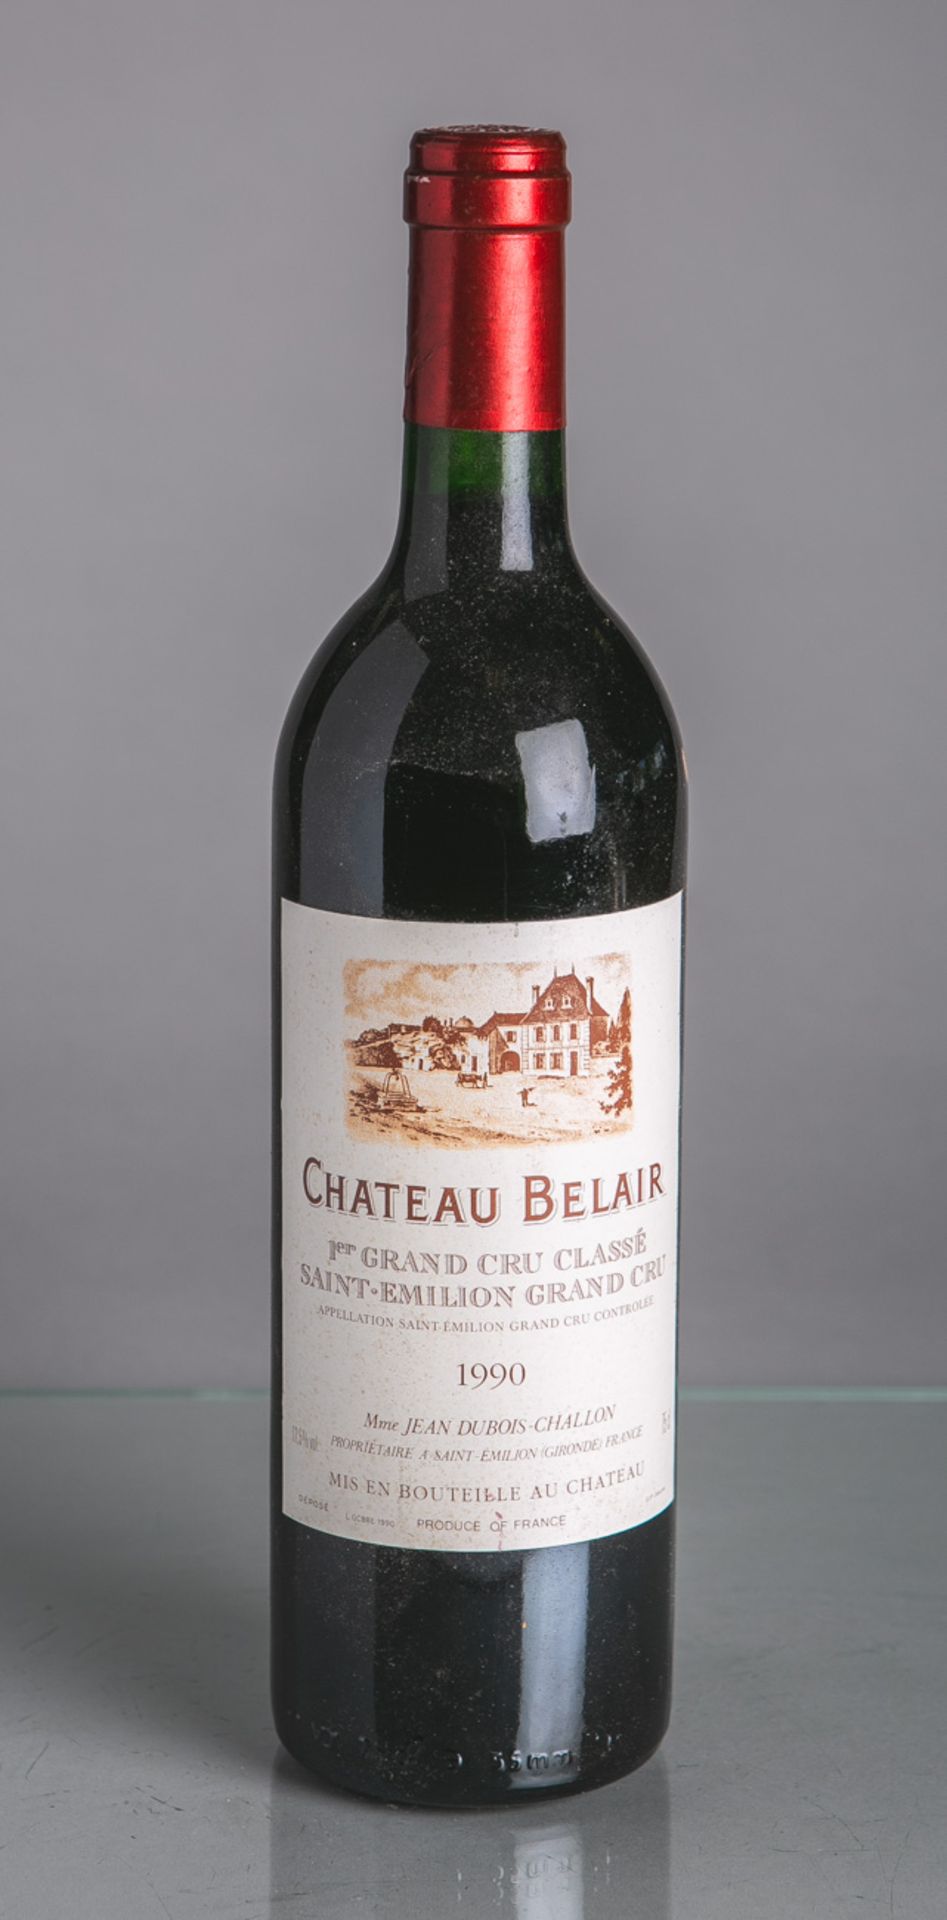 2 Flaschen von Chateau Belair, Dubois, Challon, St. Emilion (1990), Bordeaux, Grand CruClassé, je